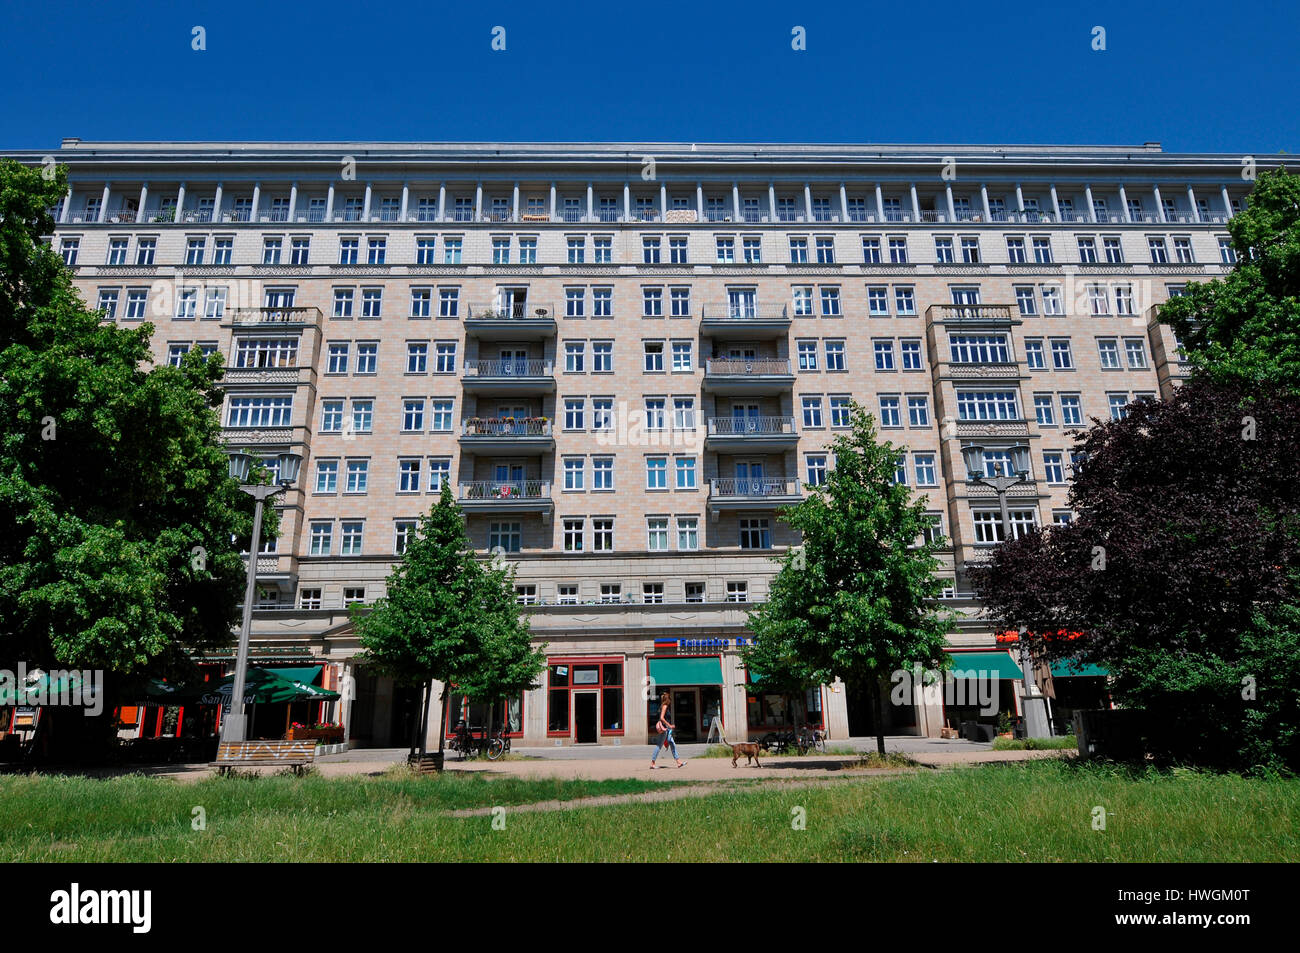 Architektur, Karl-Marx-Allee, Friedrichshain, Berlin, Deutschland Stockfoto